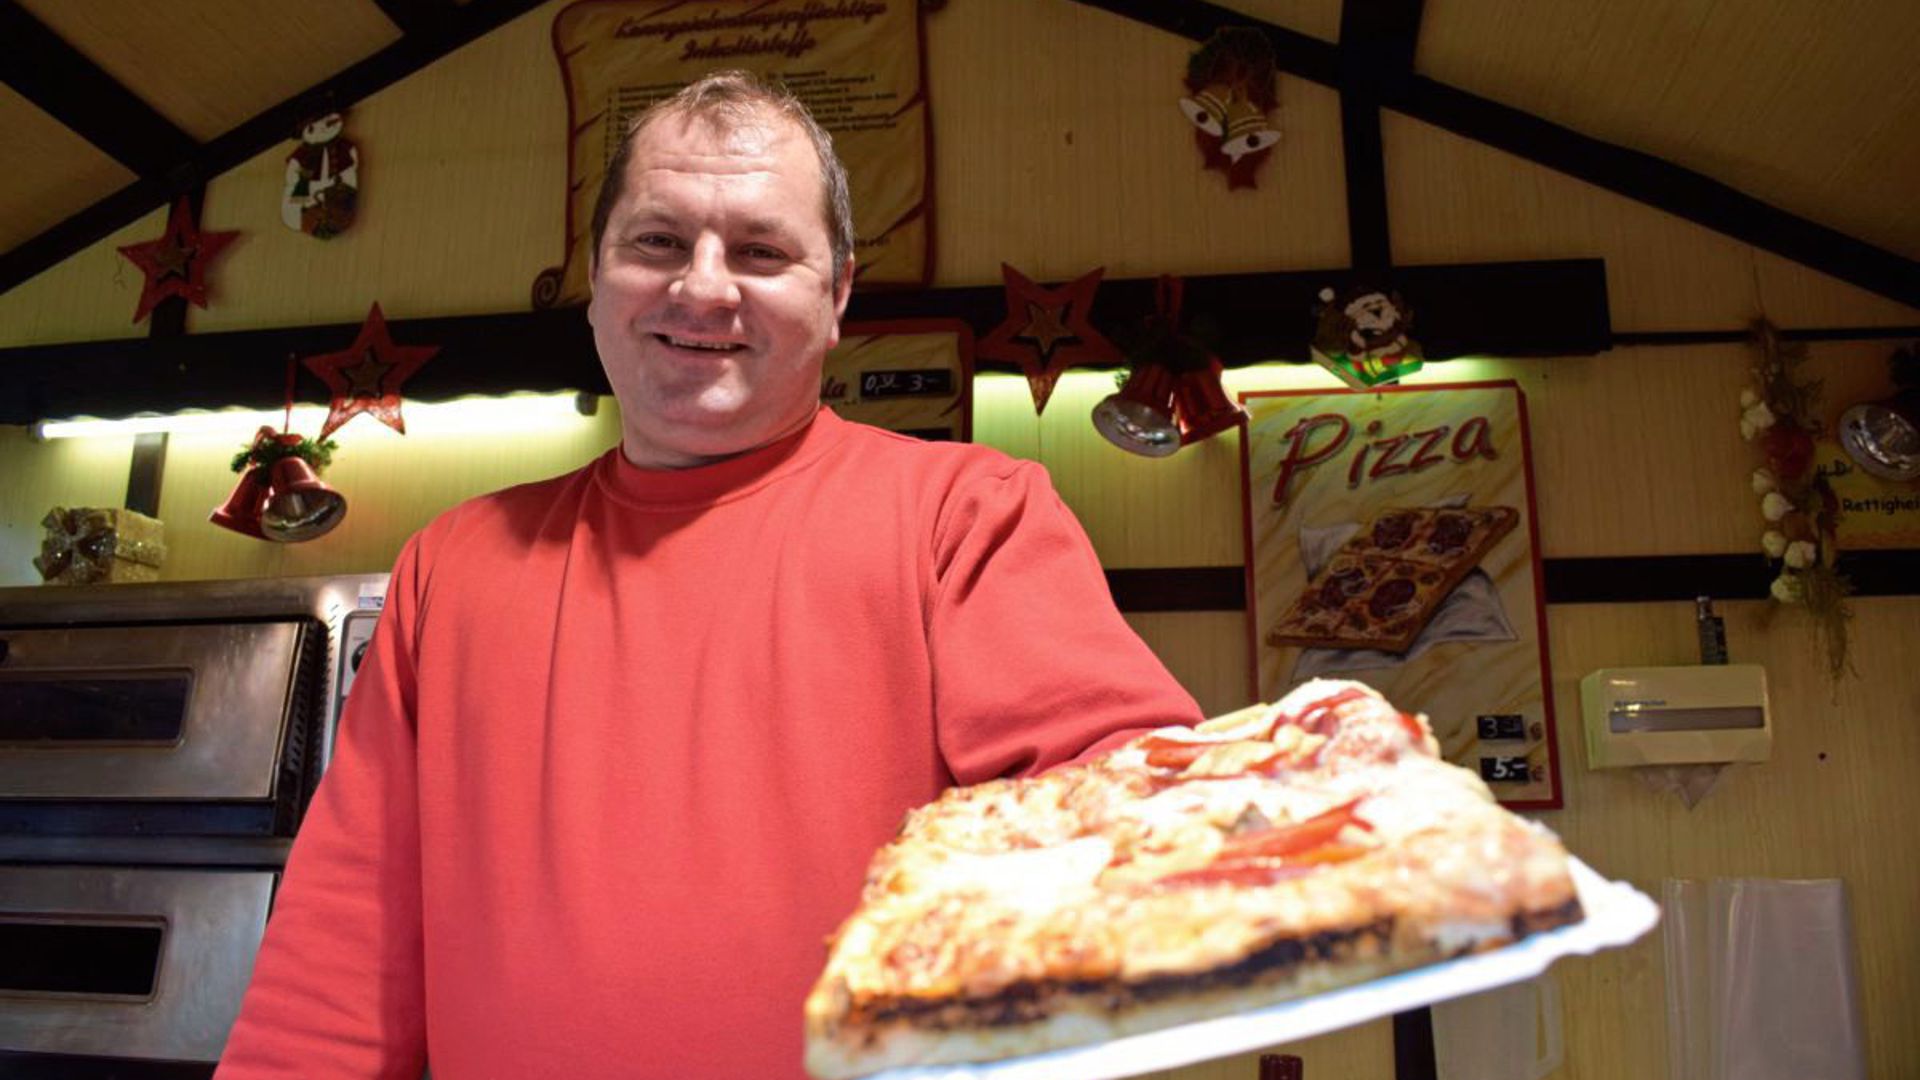 Roland Metz verkauft Pizzen auf dem Marktplatz. Er ist sehr zufrieden mit der bisherigen Bilanz.